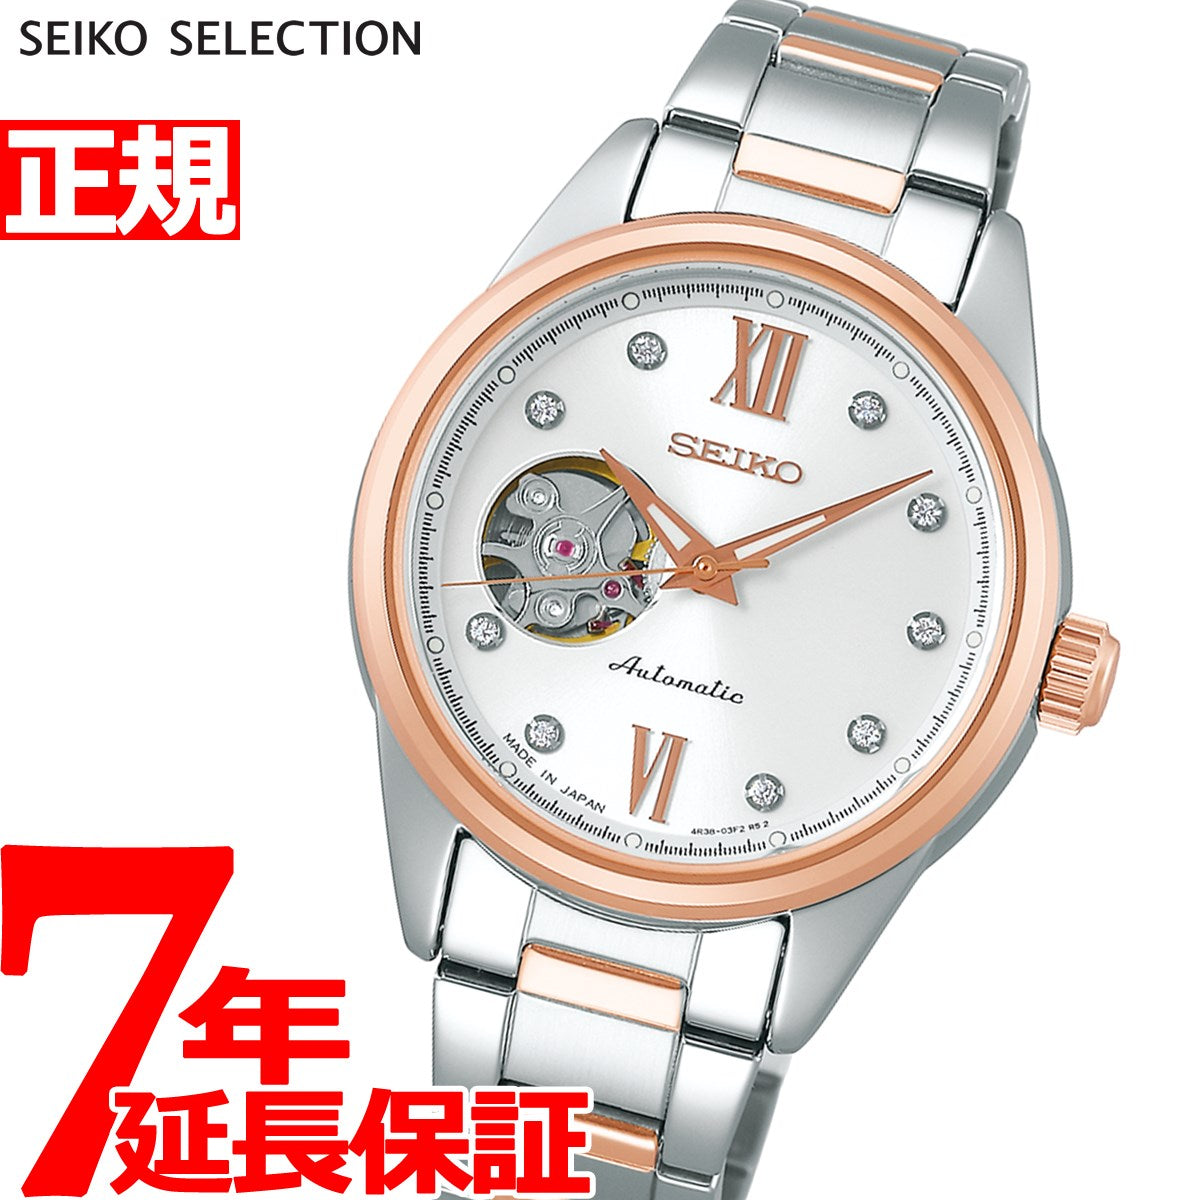 セイコー セレクション SEIKO SELECTION メカニカル 自動巻き 腕時計 レディース セミスケルトン SSDE010